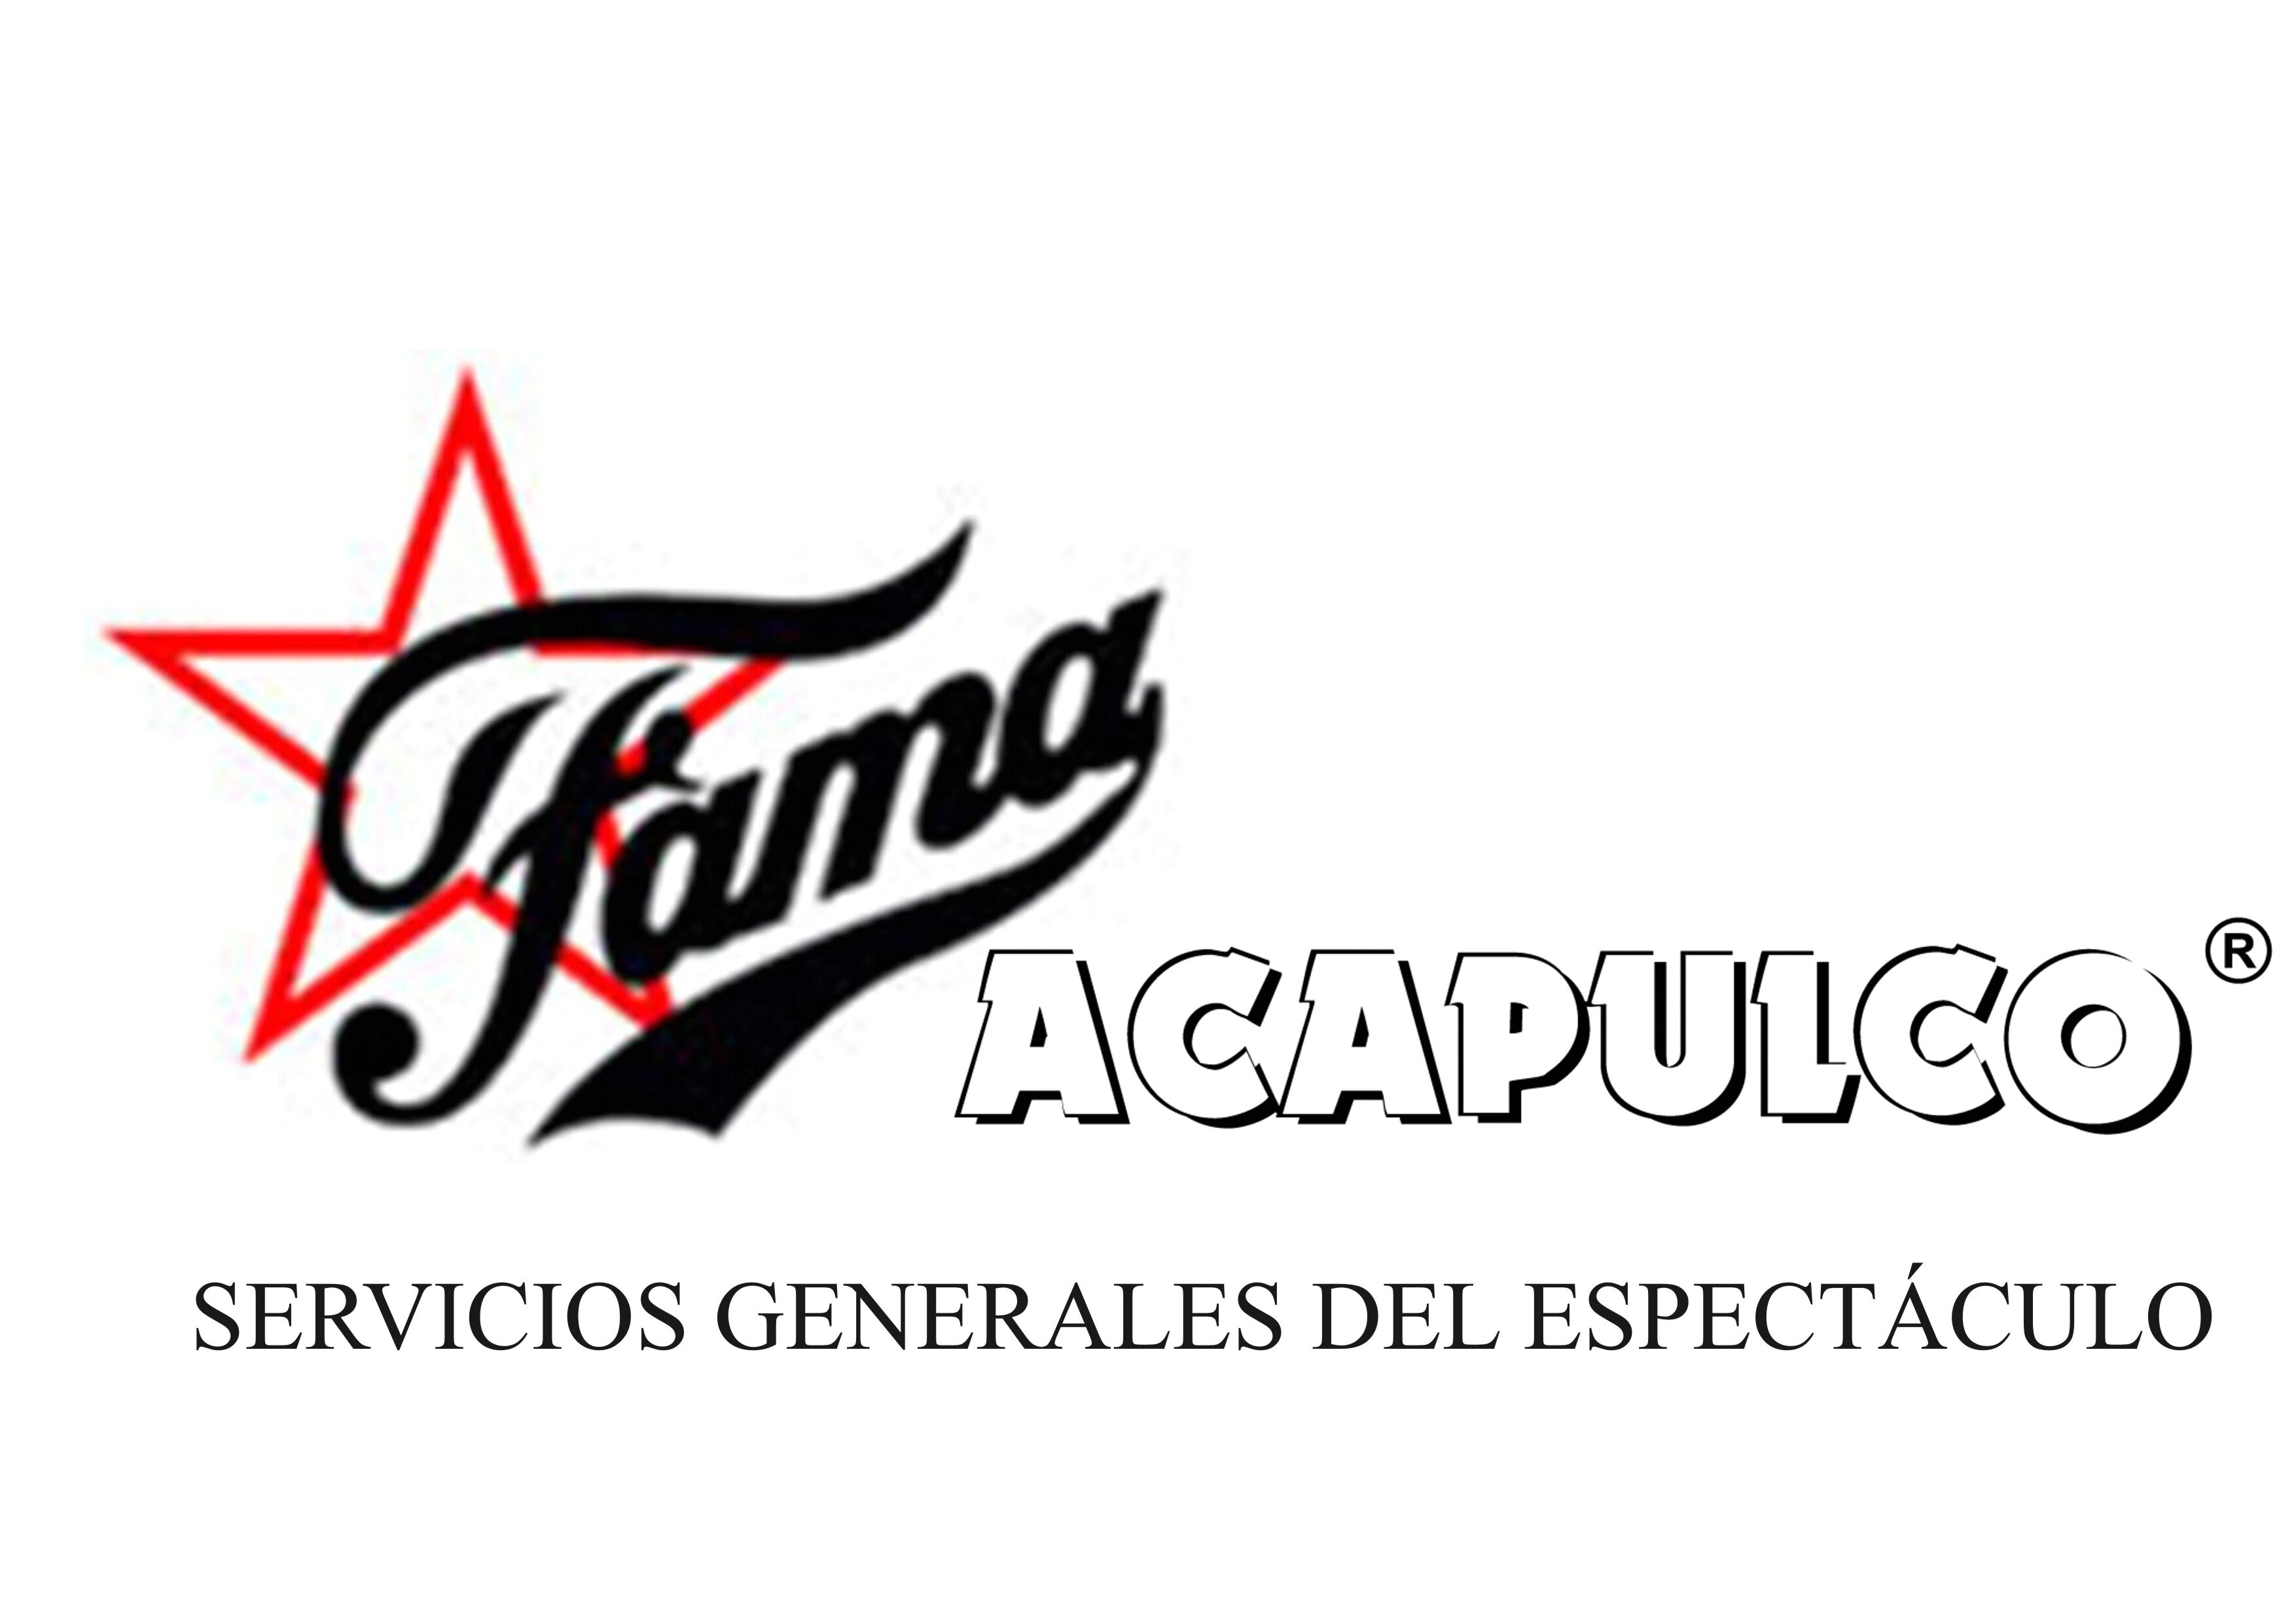 Fama Acapulco Espectáculos
Empresa dedicada a Servicios Generales del Espectáculo, todo lo que necesita para su evento. 
Toda una garantía de éxito desde 1983